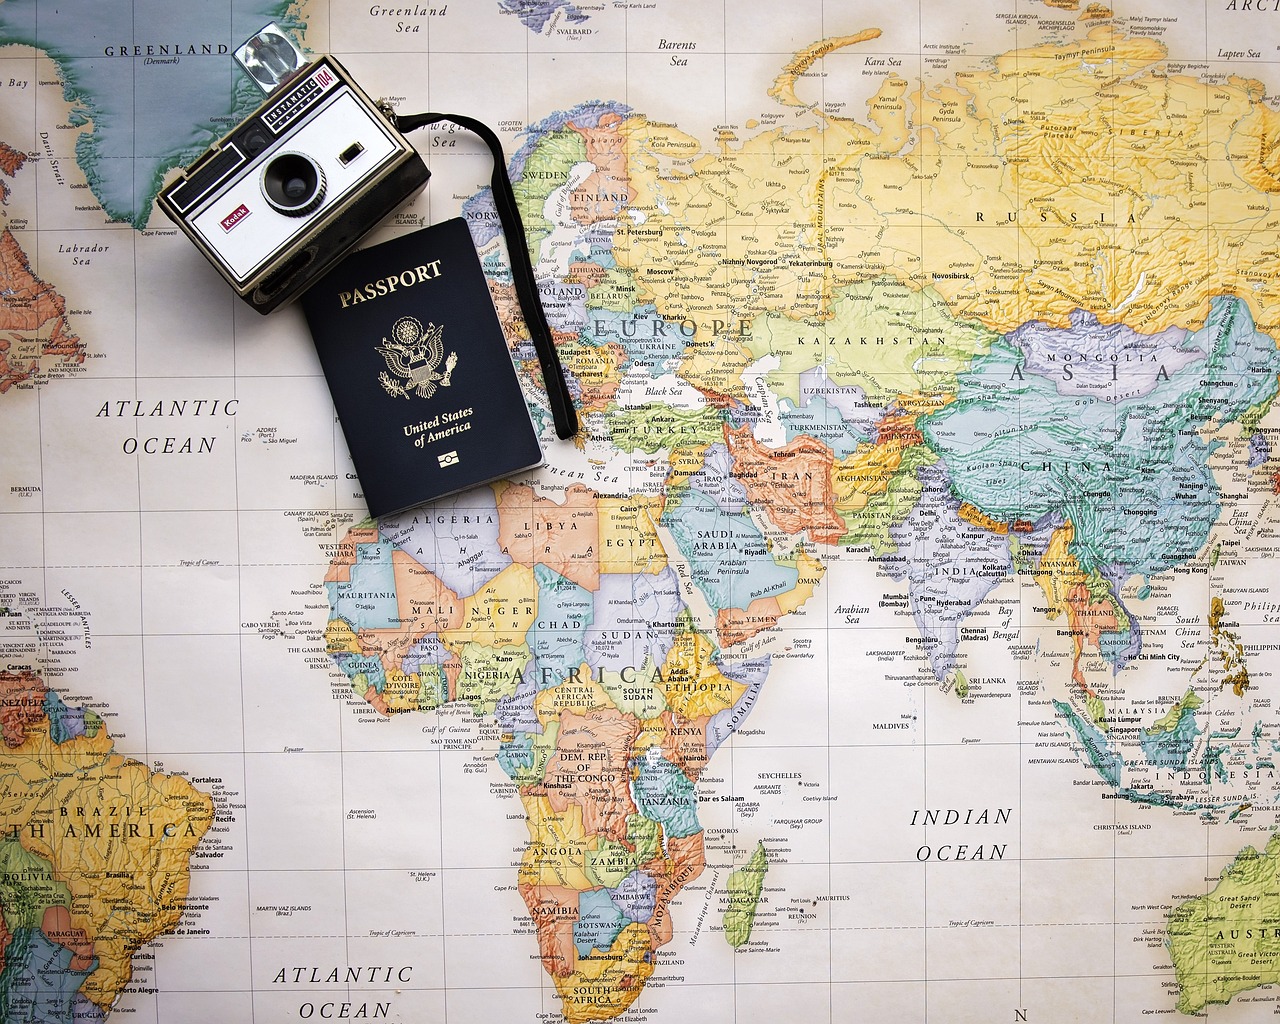 ¿Cuál es la diferencia entre la visa y el pasaporte?